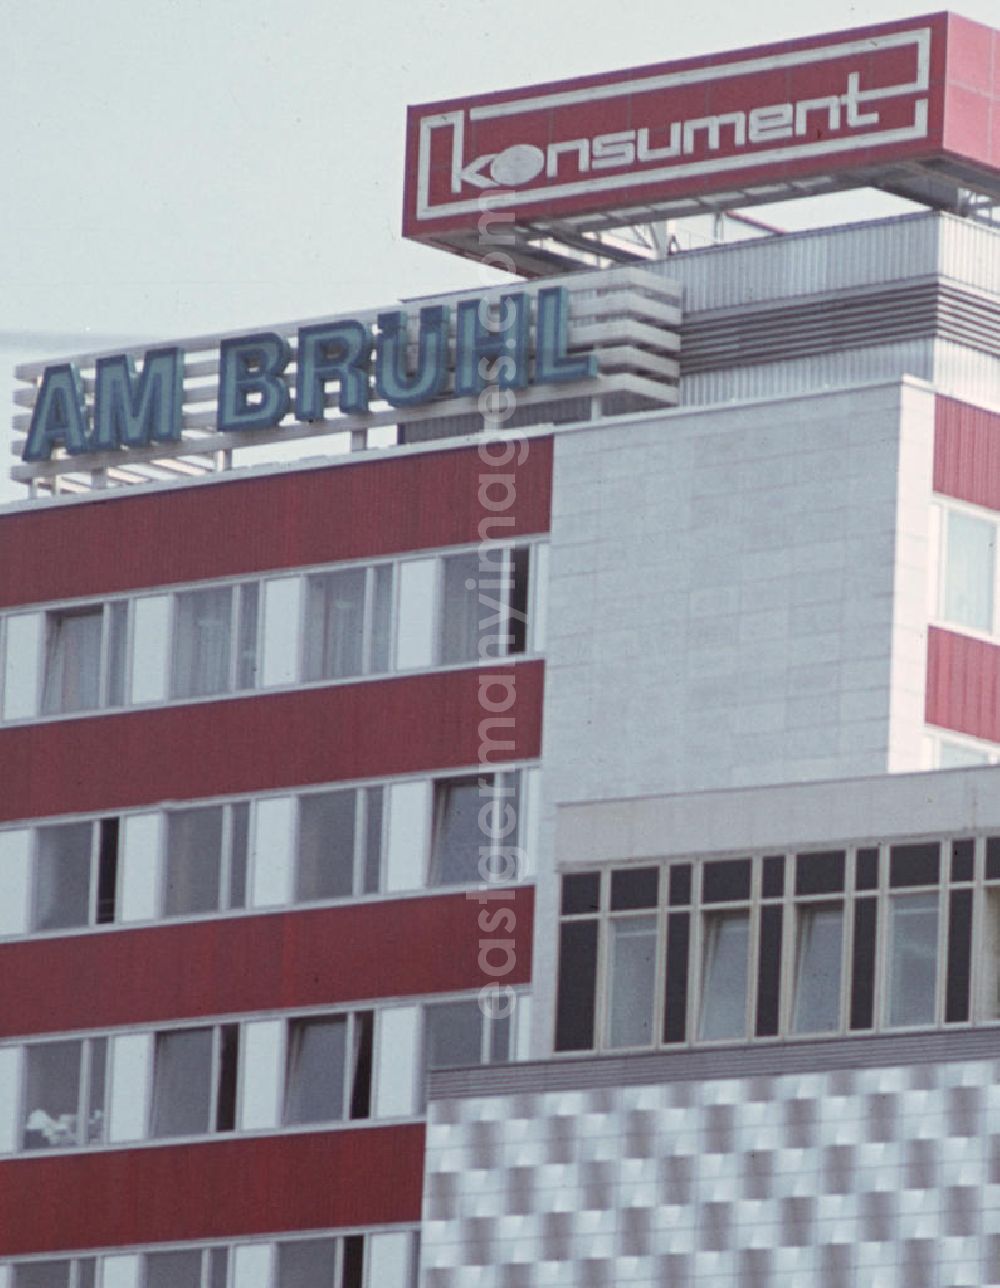 GDR photo archive: Leipzig - Blick auf das Konsument-Warenhaus am Brühl in Leipzig. Das wegen seiner Fassade volkstümlich auch als Blechbüchse bezeichnete Kaufhaus war am 22. August 1968 als größtes Warenhaus der DDR eröffnet worden.